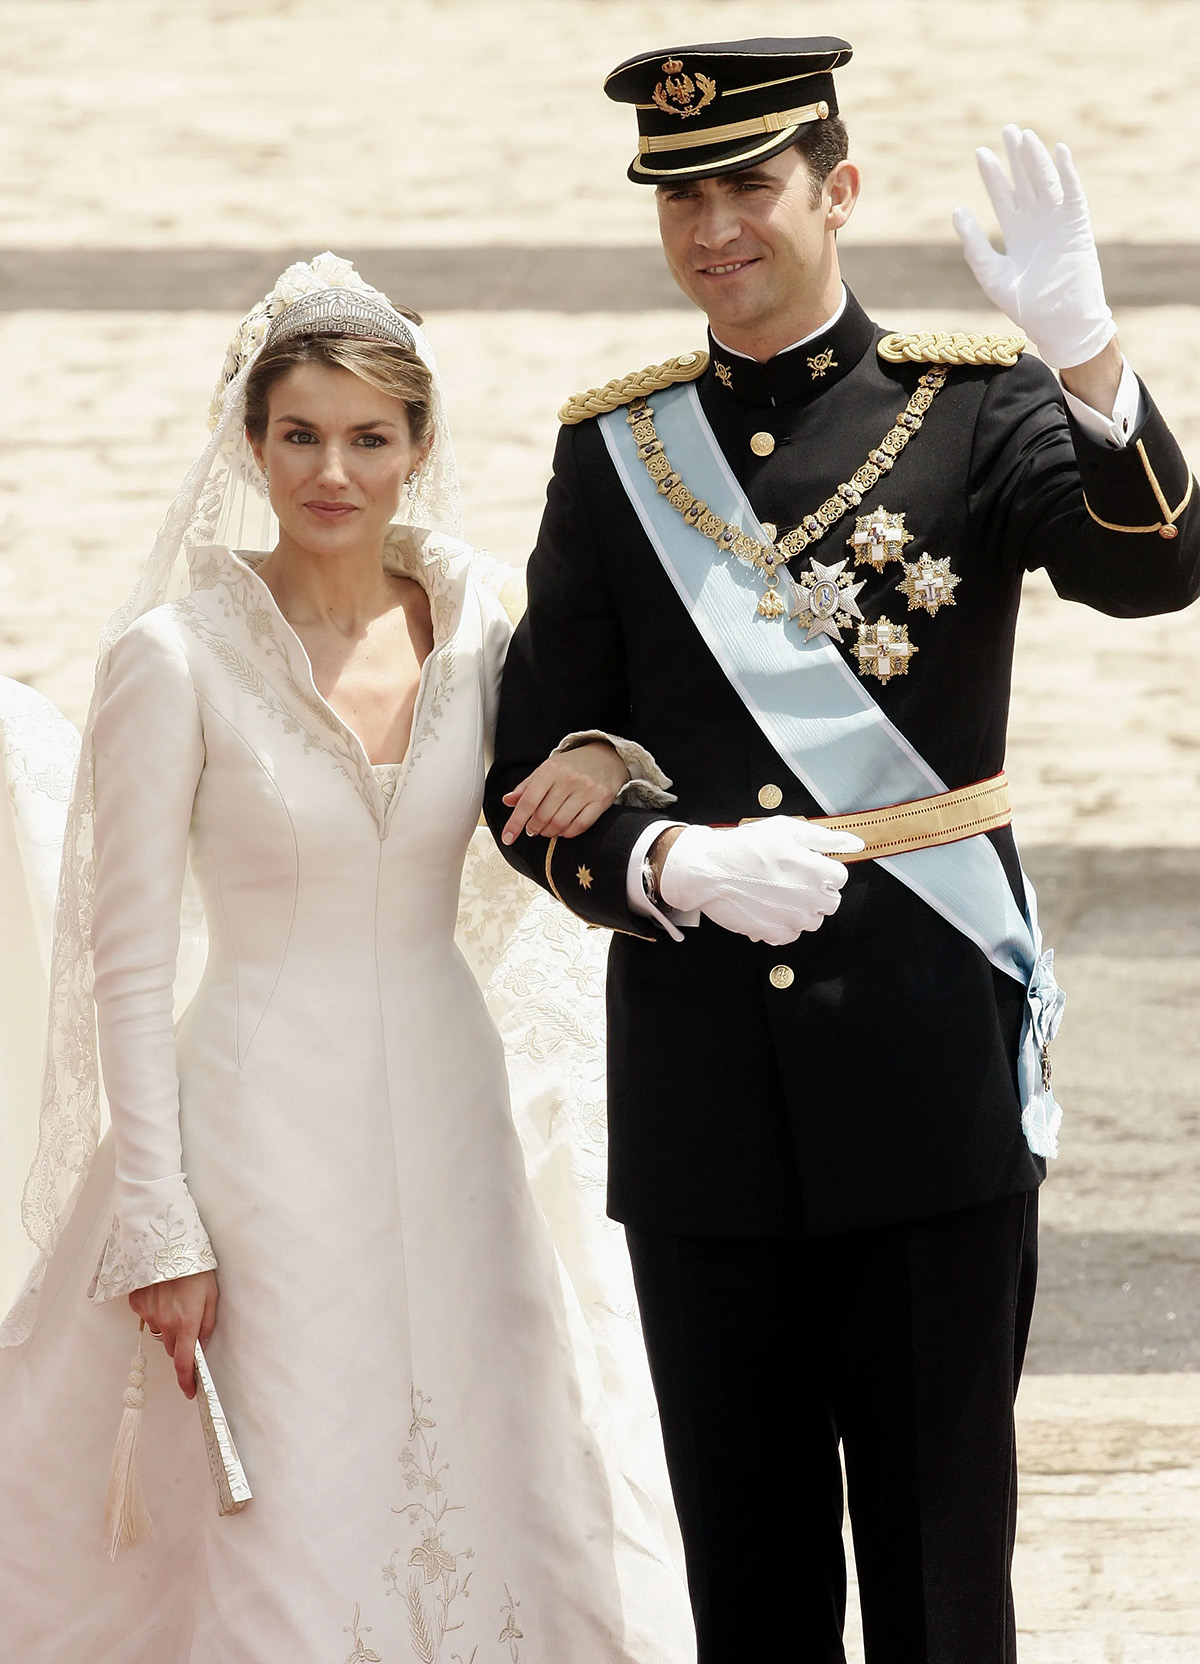 Испанский наследный принц Фелипе де Бурбон и его невеста, принцесса Летиция Ортис, позируют фотографу во дворе королевского дворца после свадебной церемонии в соборе Альмудена 22 мая 2004 года в Мадриде